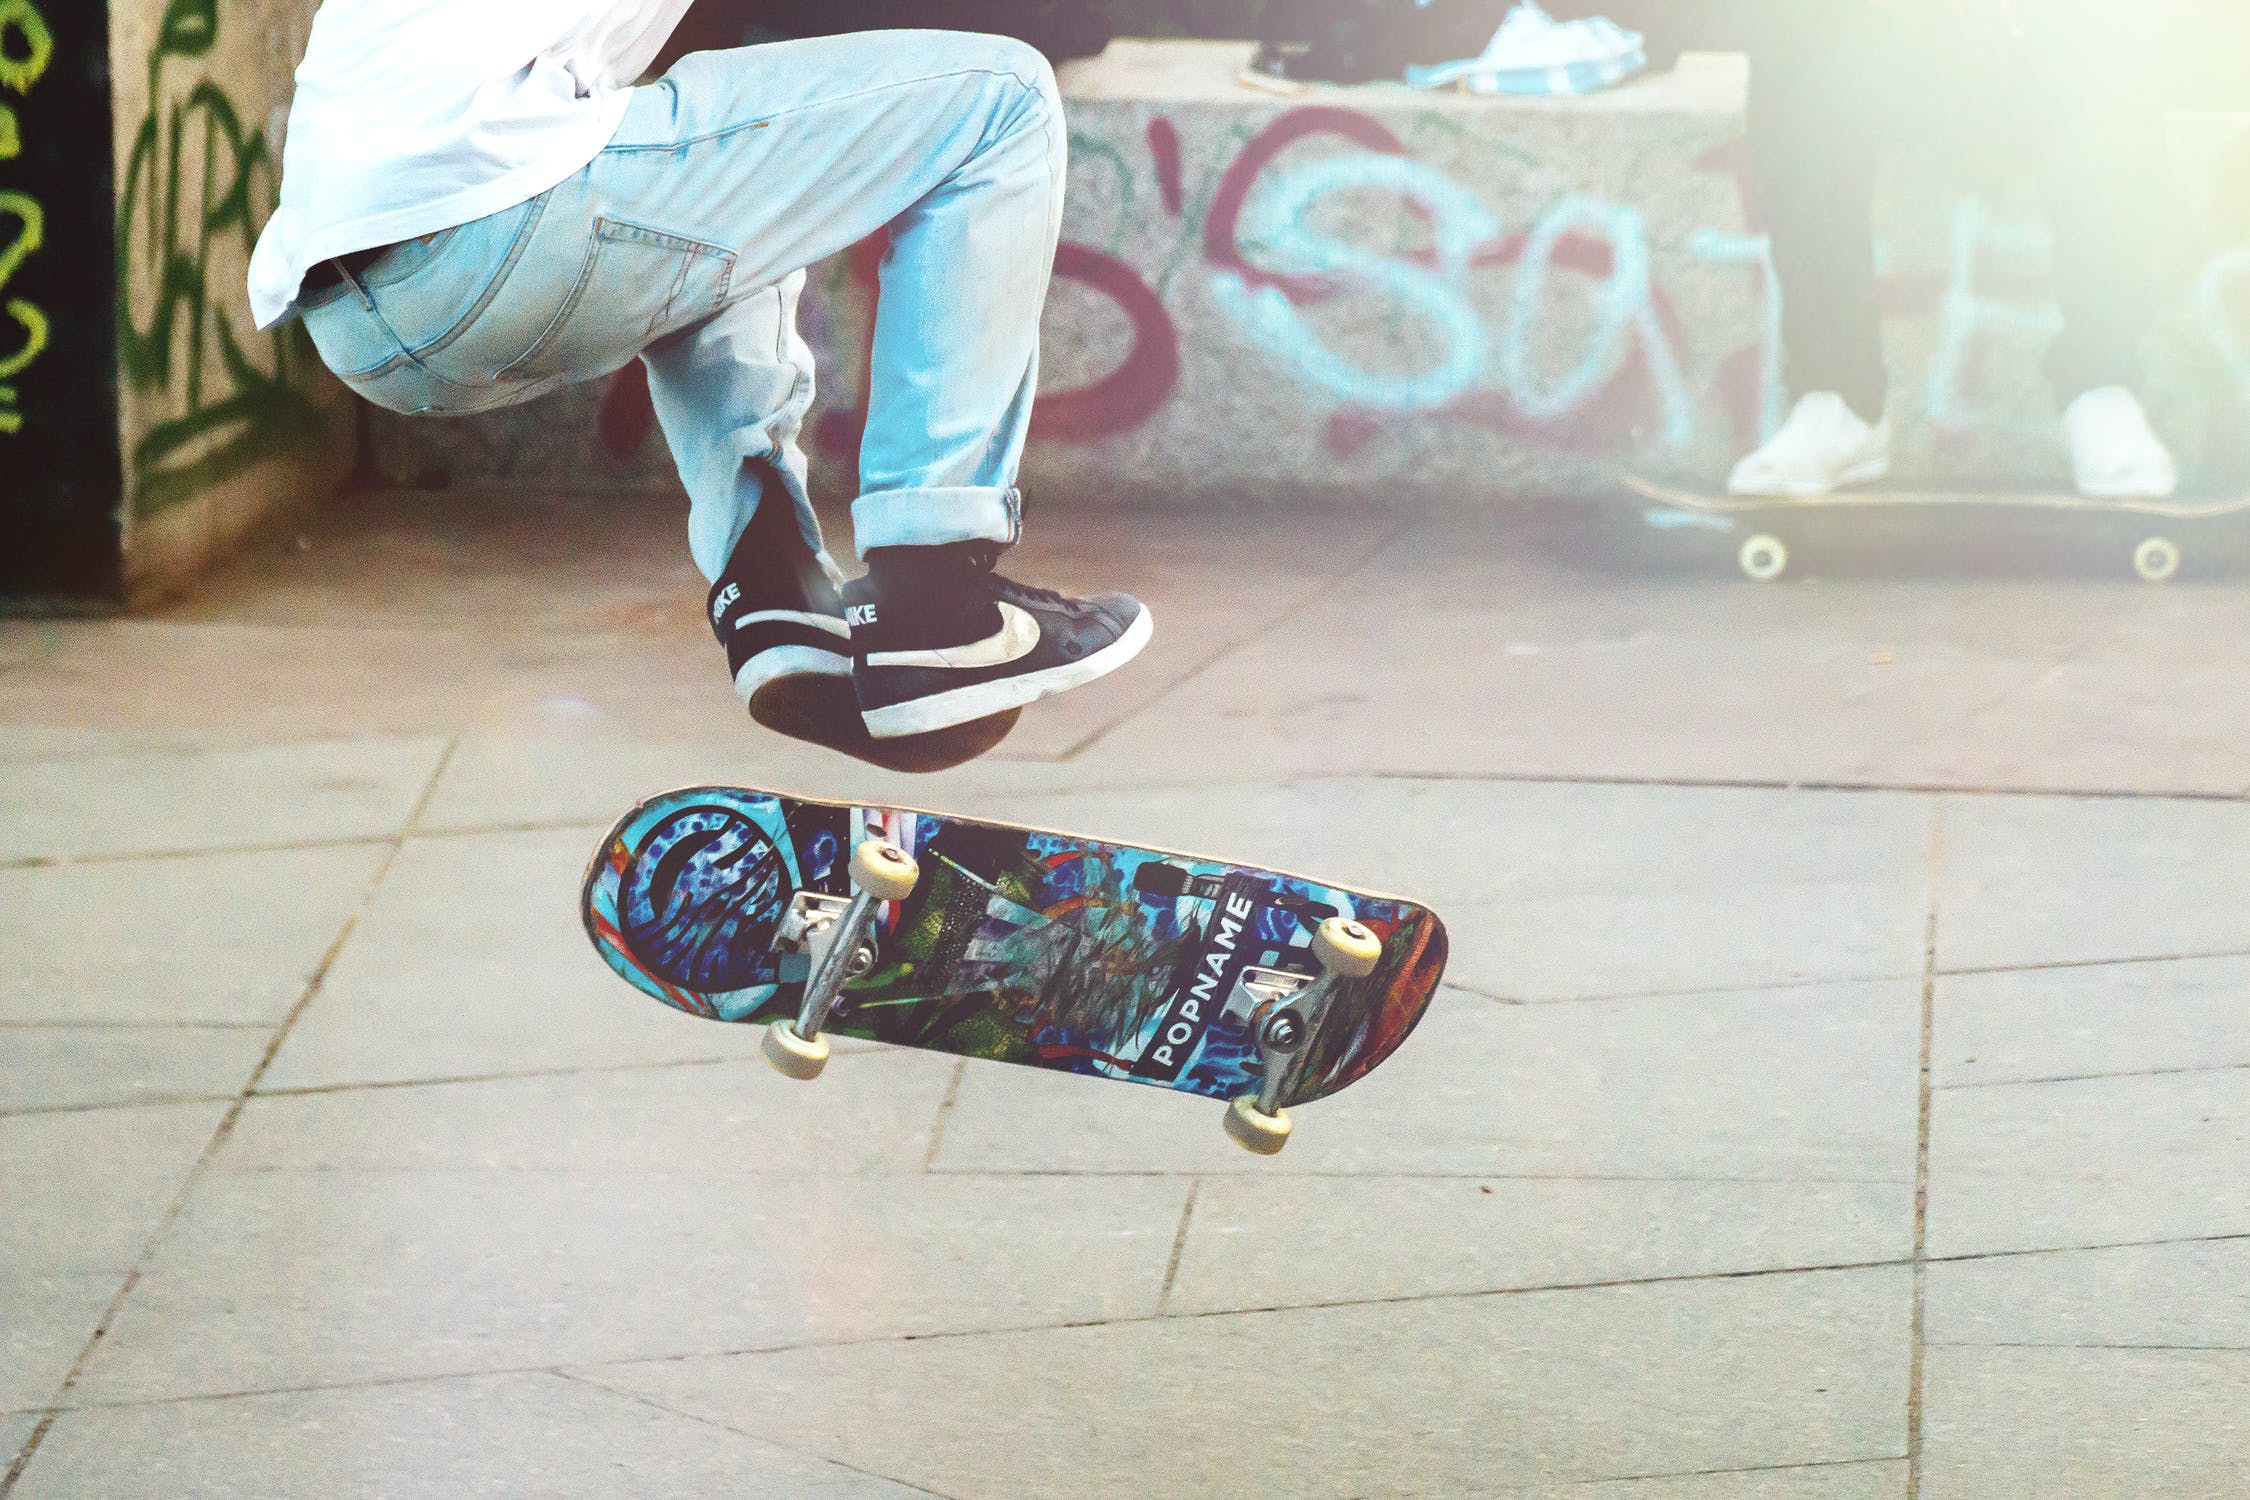 Skateboard.jpeg